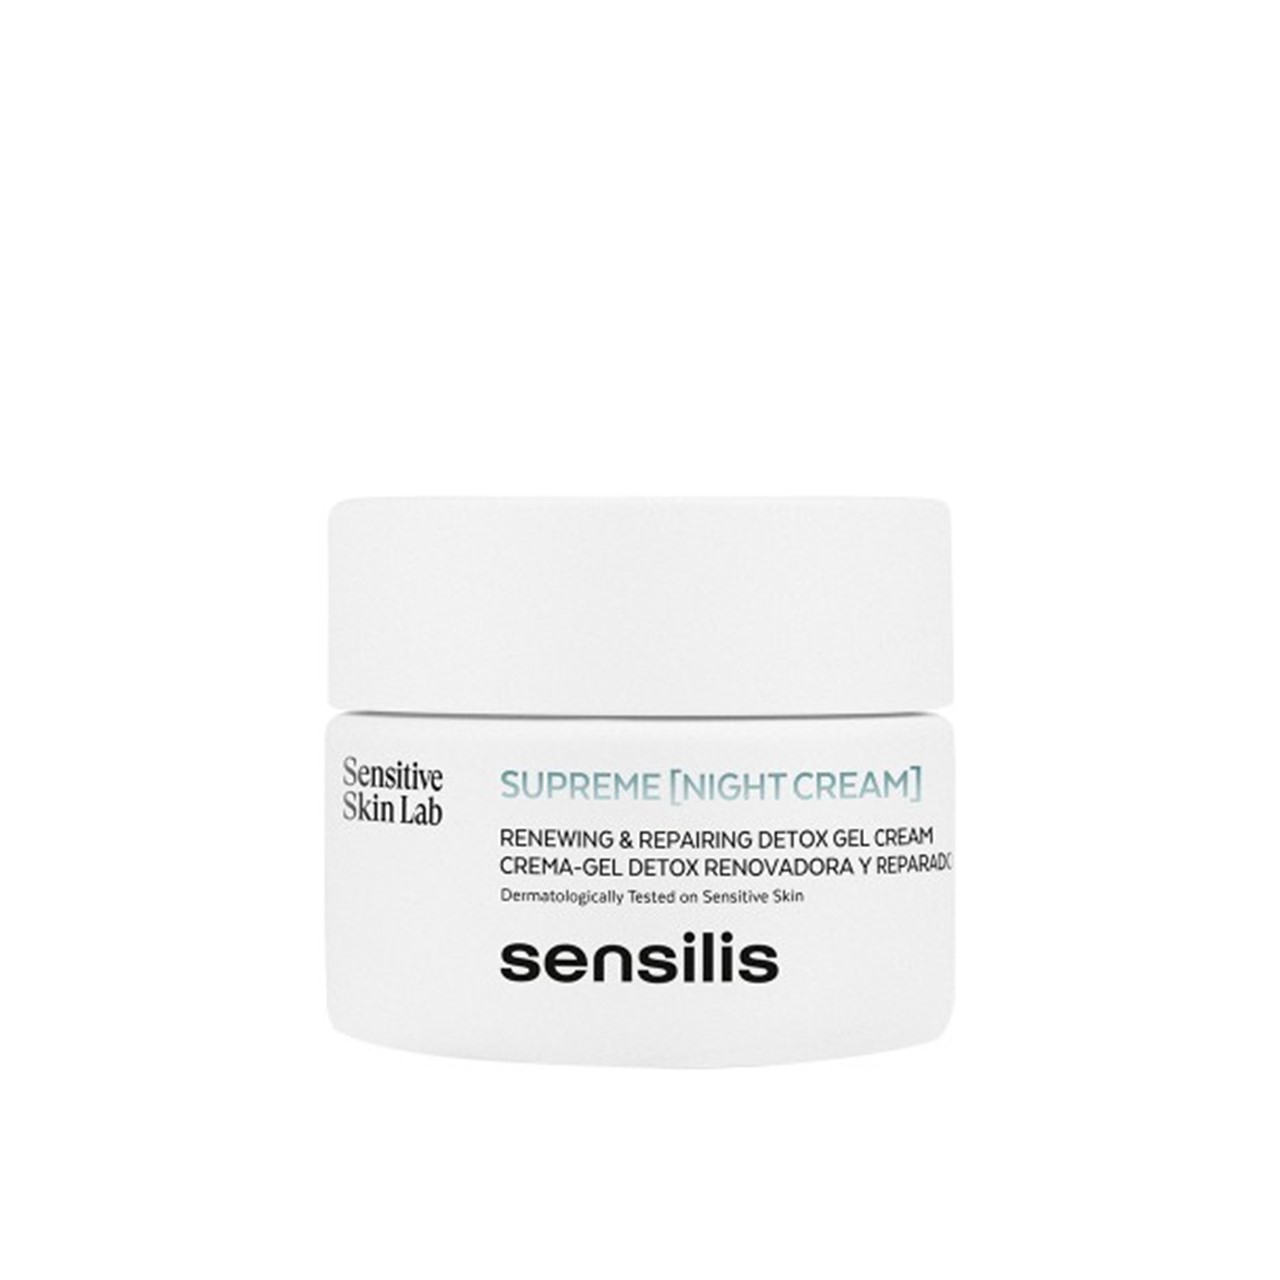 Sensilis Supreme [Night Cream] Detox Gel Cream 50ml (1.69fl oz)